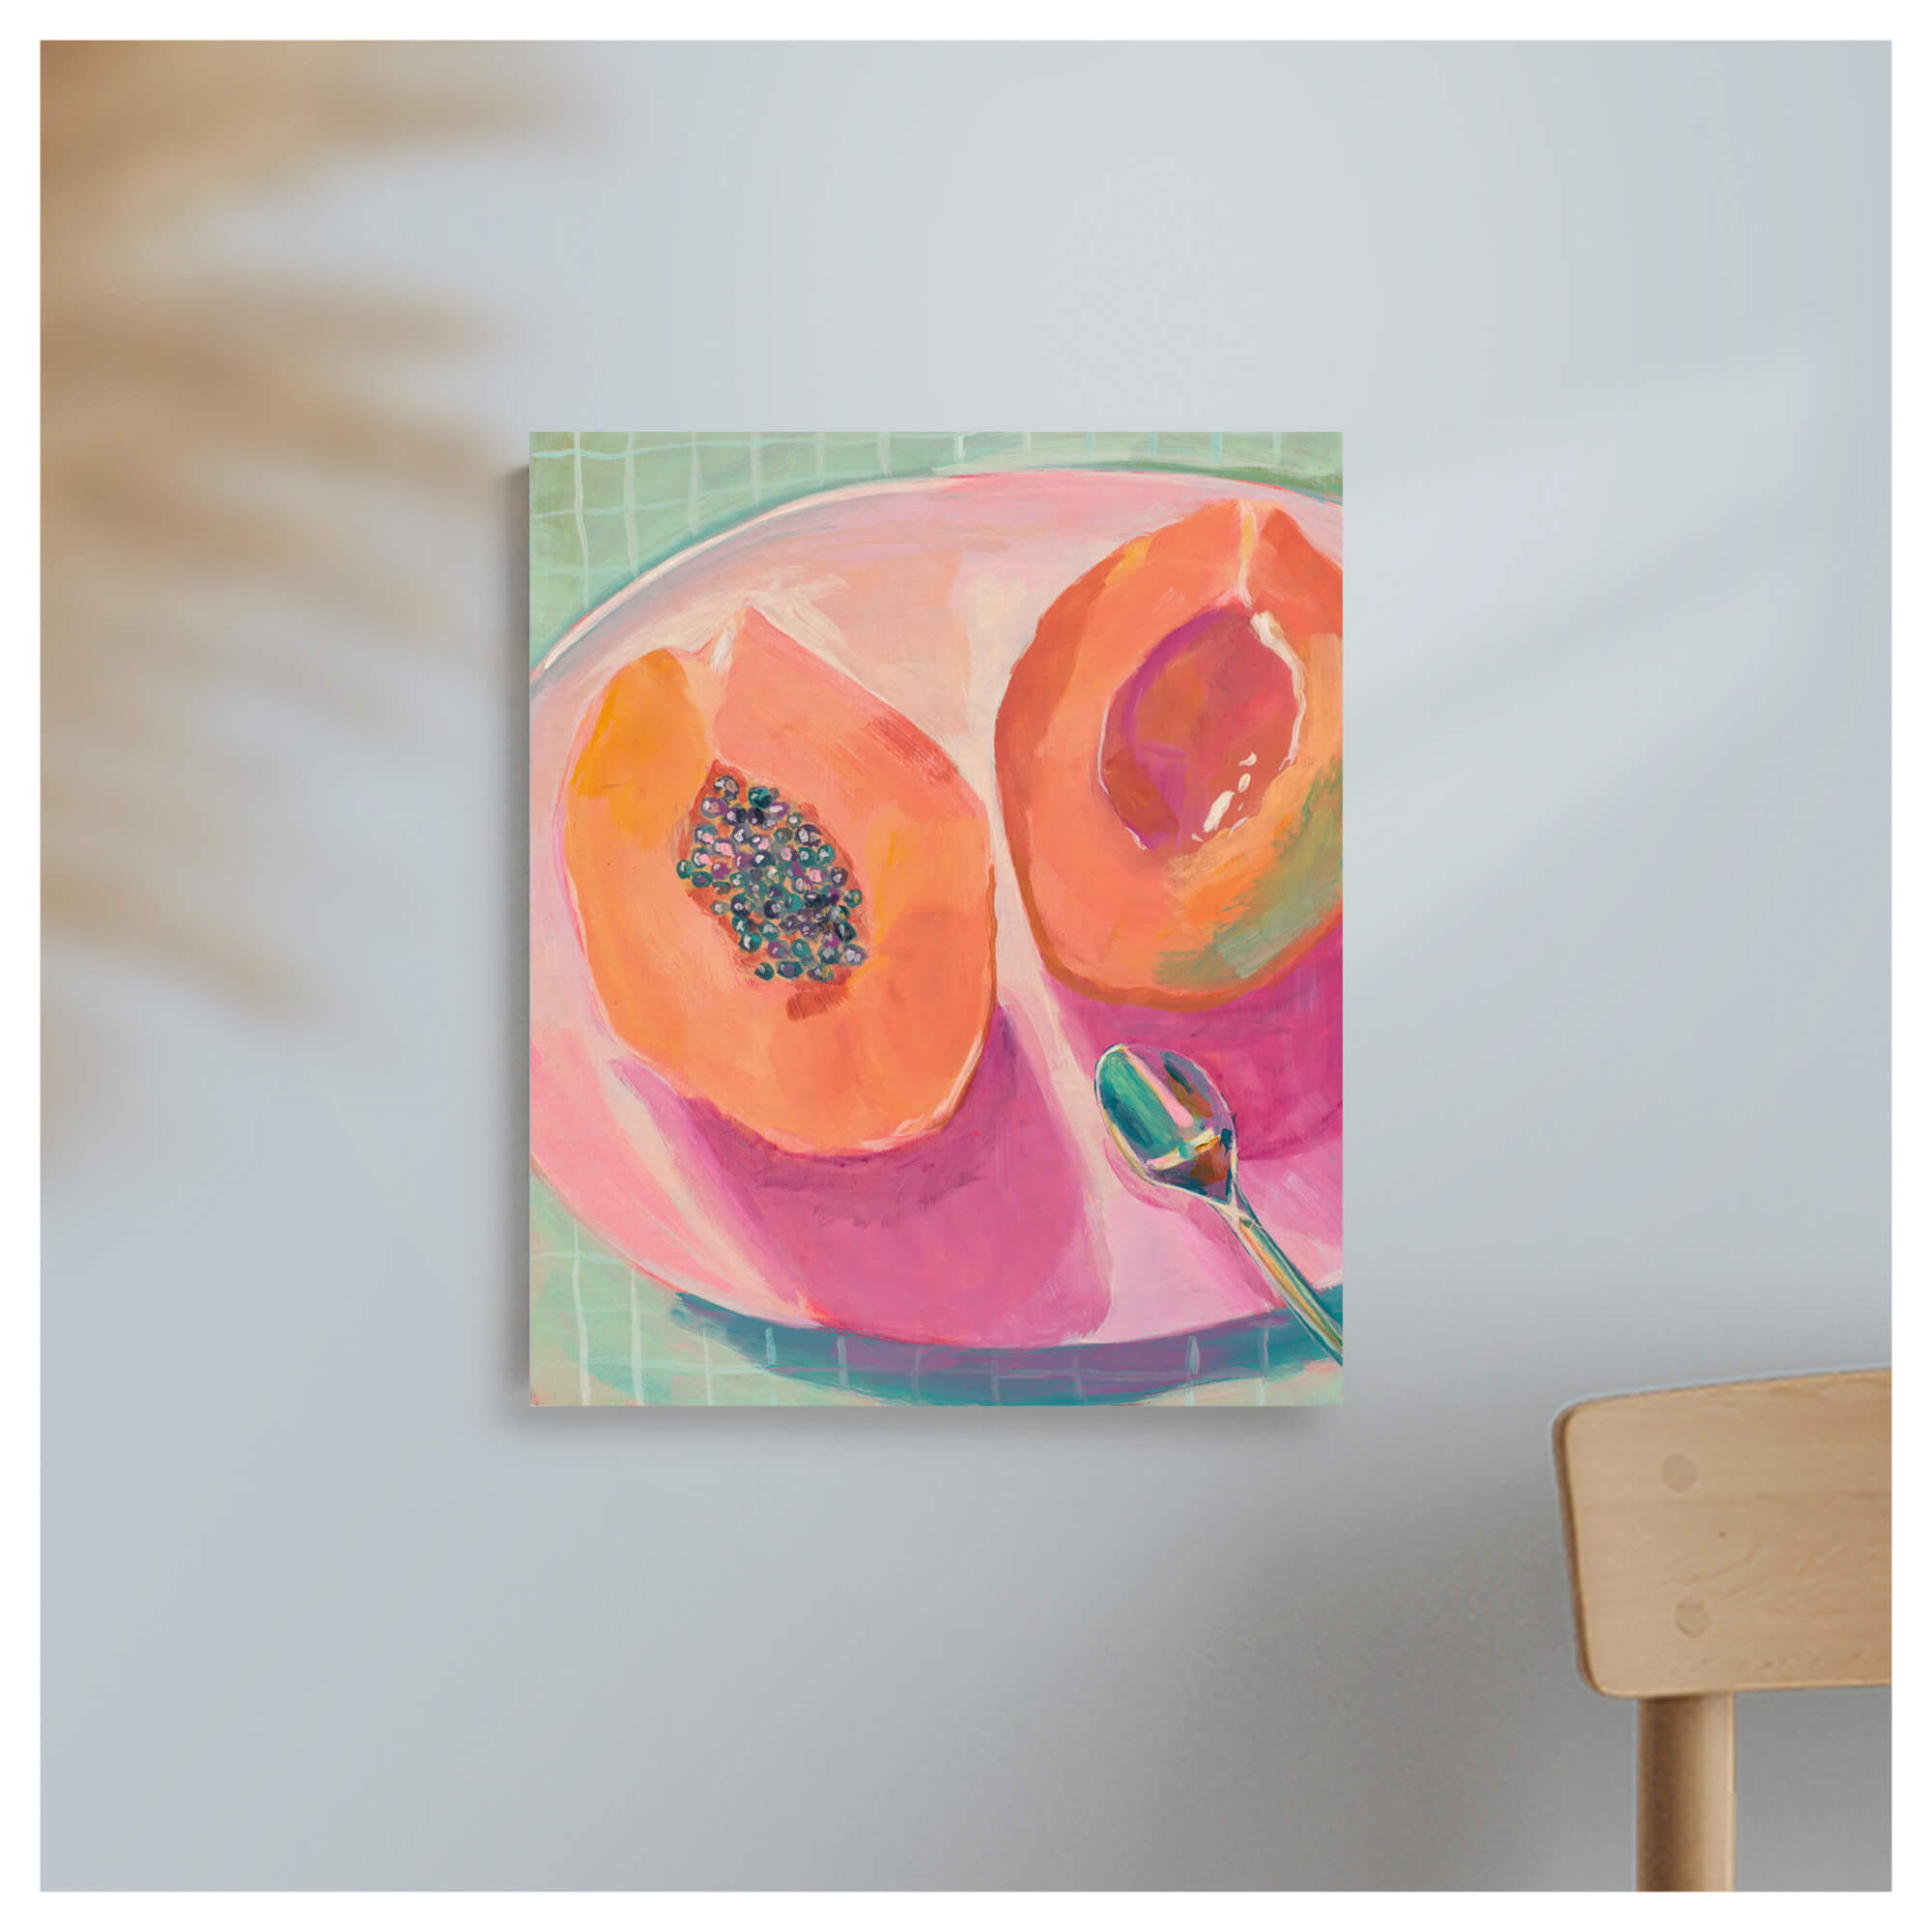 Pastel-hued papaya fruit by Hawaii artist Lindsay Wilkins